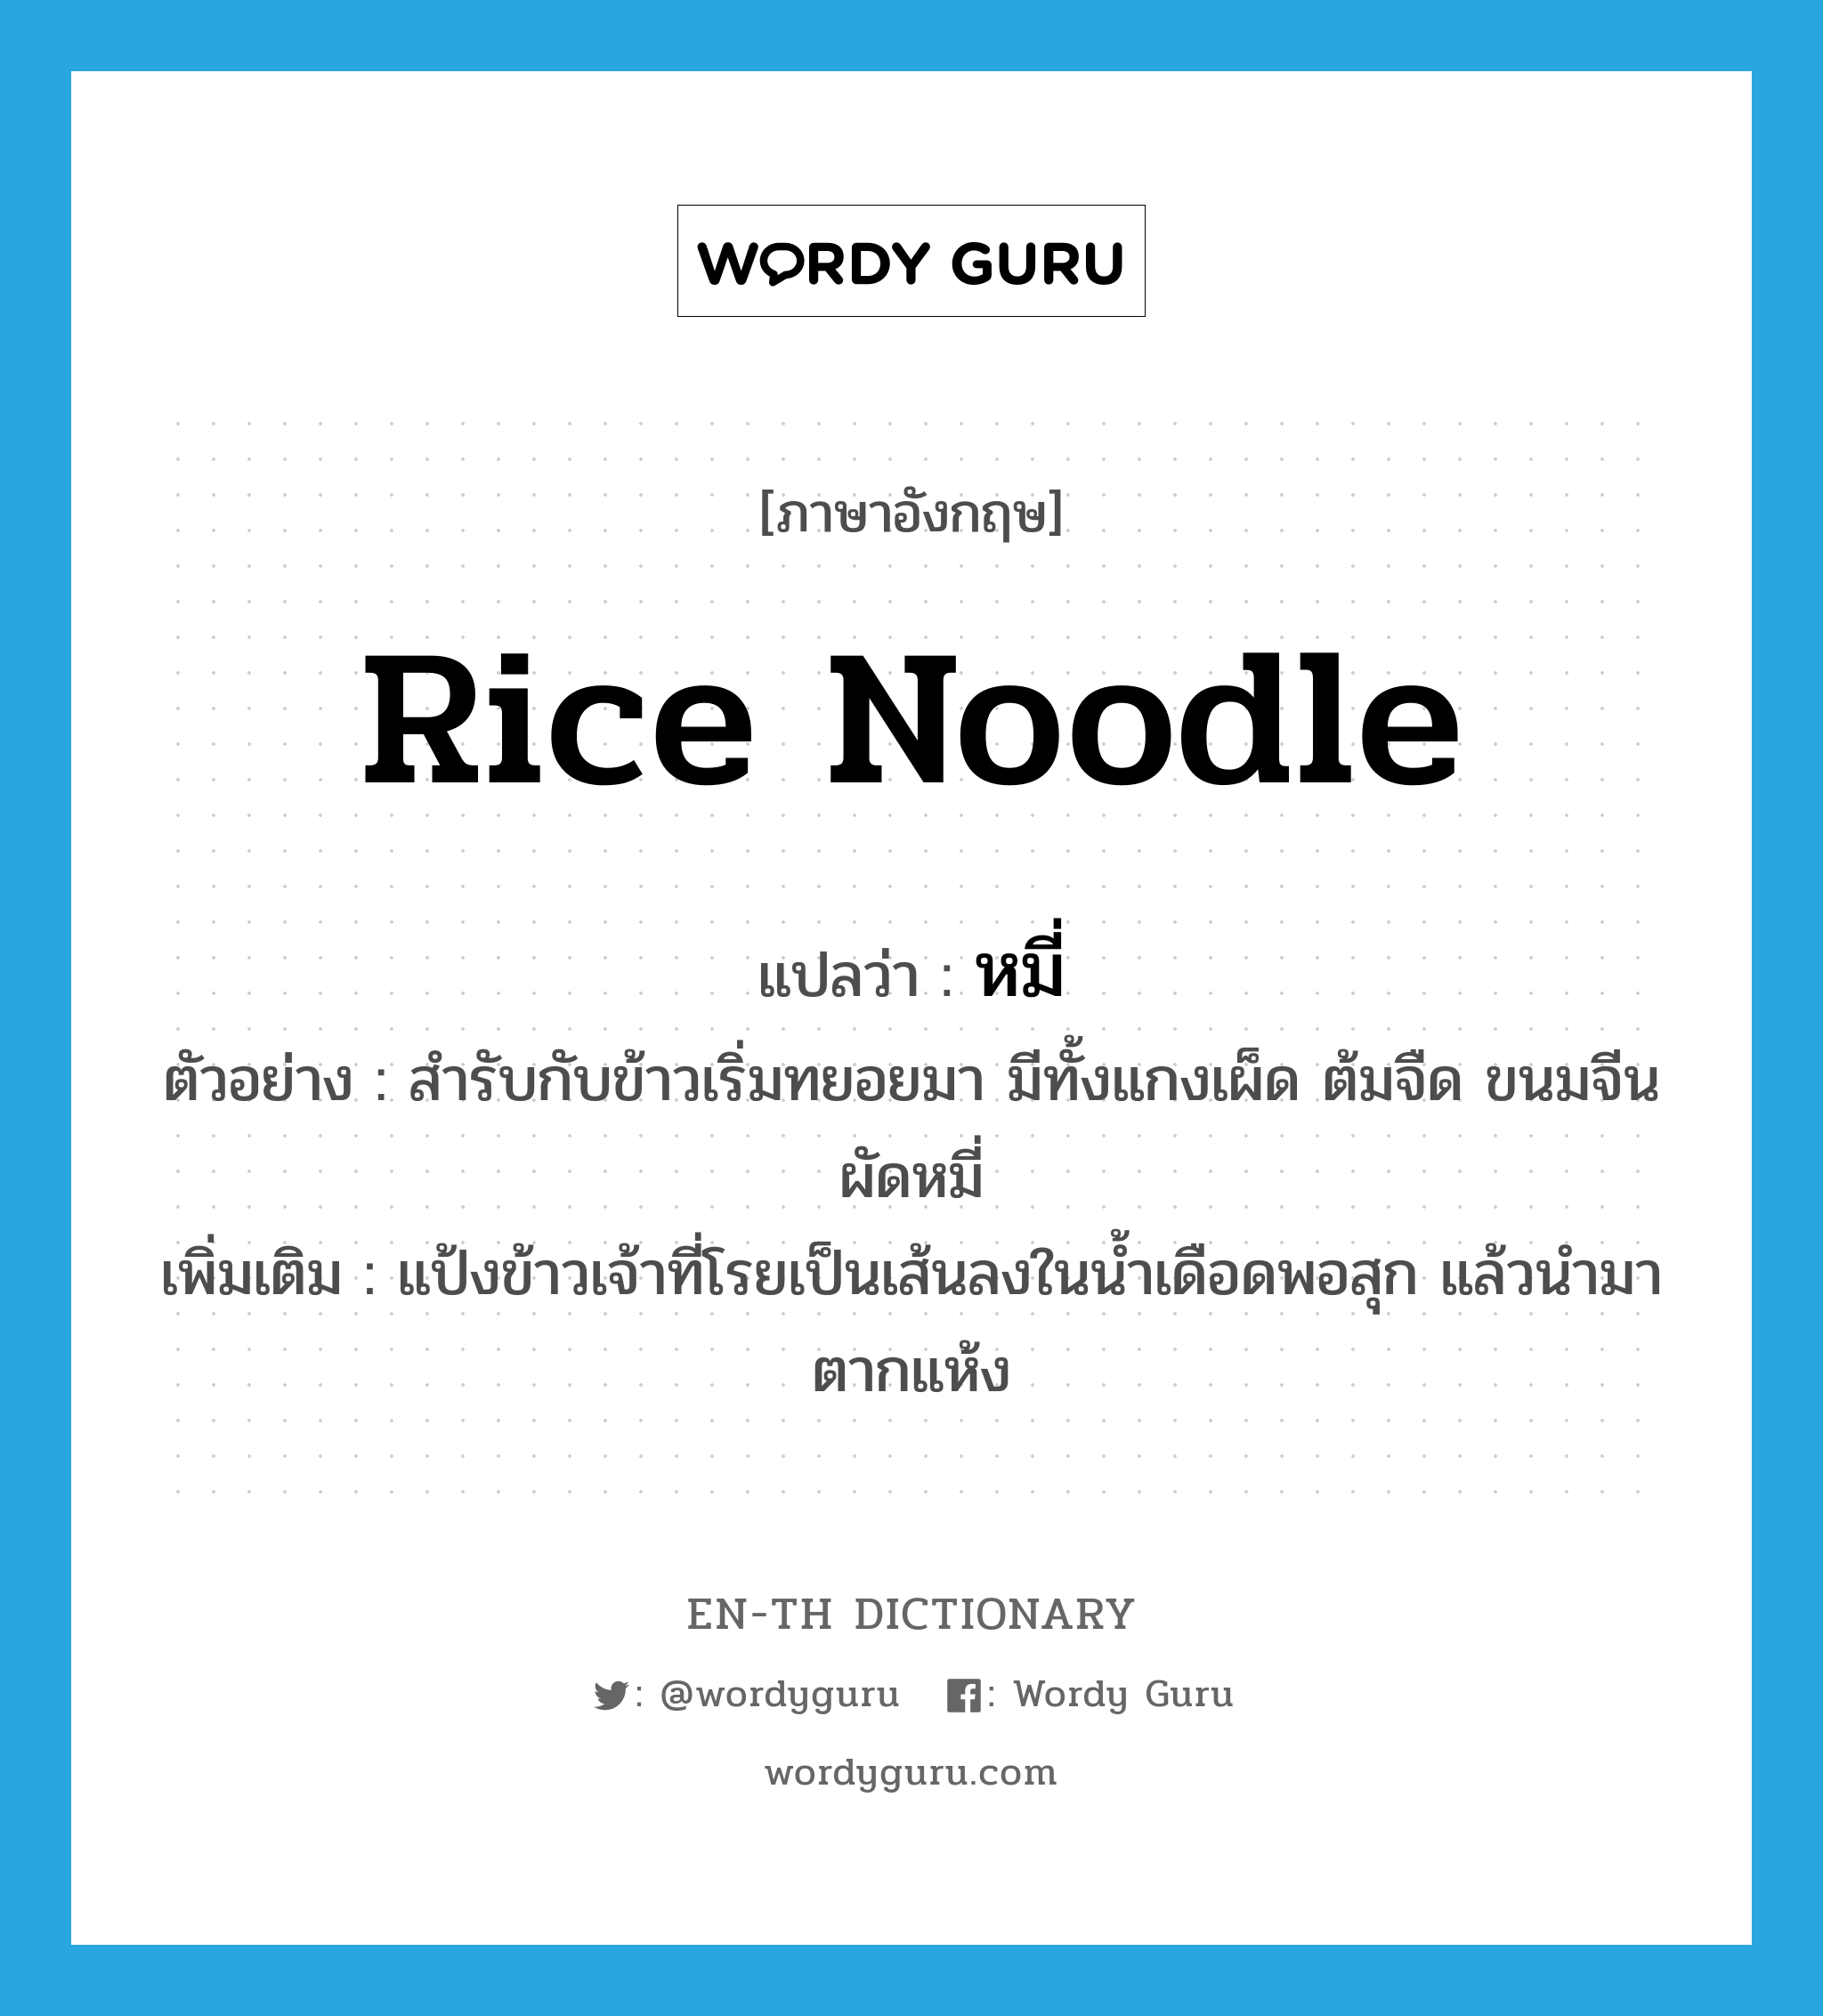 rice noodle แปลว่า?, คำศัพท์ภาษาอังกฤษ rice noodle แปลว่า หมี่ ประเภท N ตัวอย่าง สำรับกับข้าวเริ่มทยอยมา มีทั้งแกงเผ็ด ต้มจืด ขนมจีน ผัดหมี่ เพิ่มเติม แป้งข้าวเจ้าที่โรยเป็นเส้นลงในน้ำเดือดพอสุก แล้วนำมาตากแห้ง หมวด N